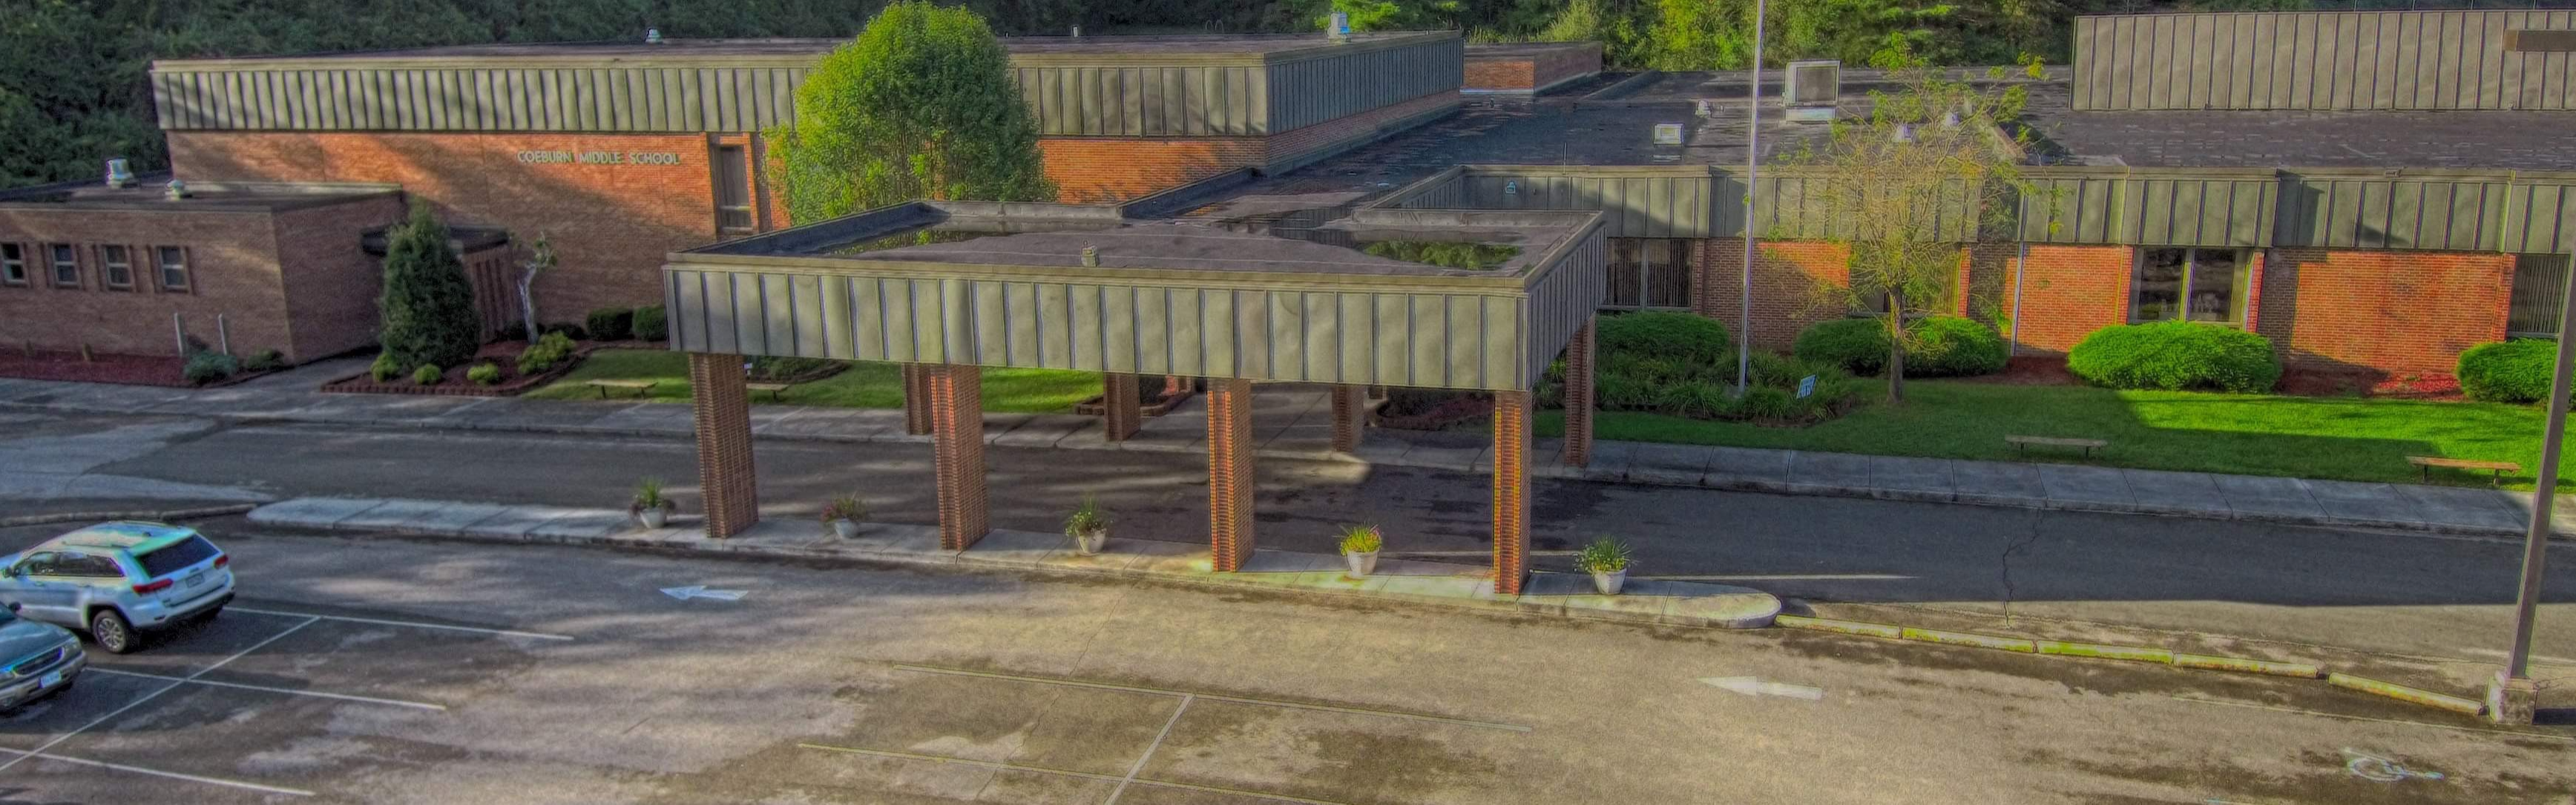 Aerial photo of Coeburn Middle School